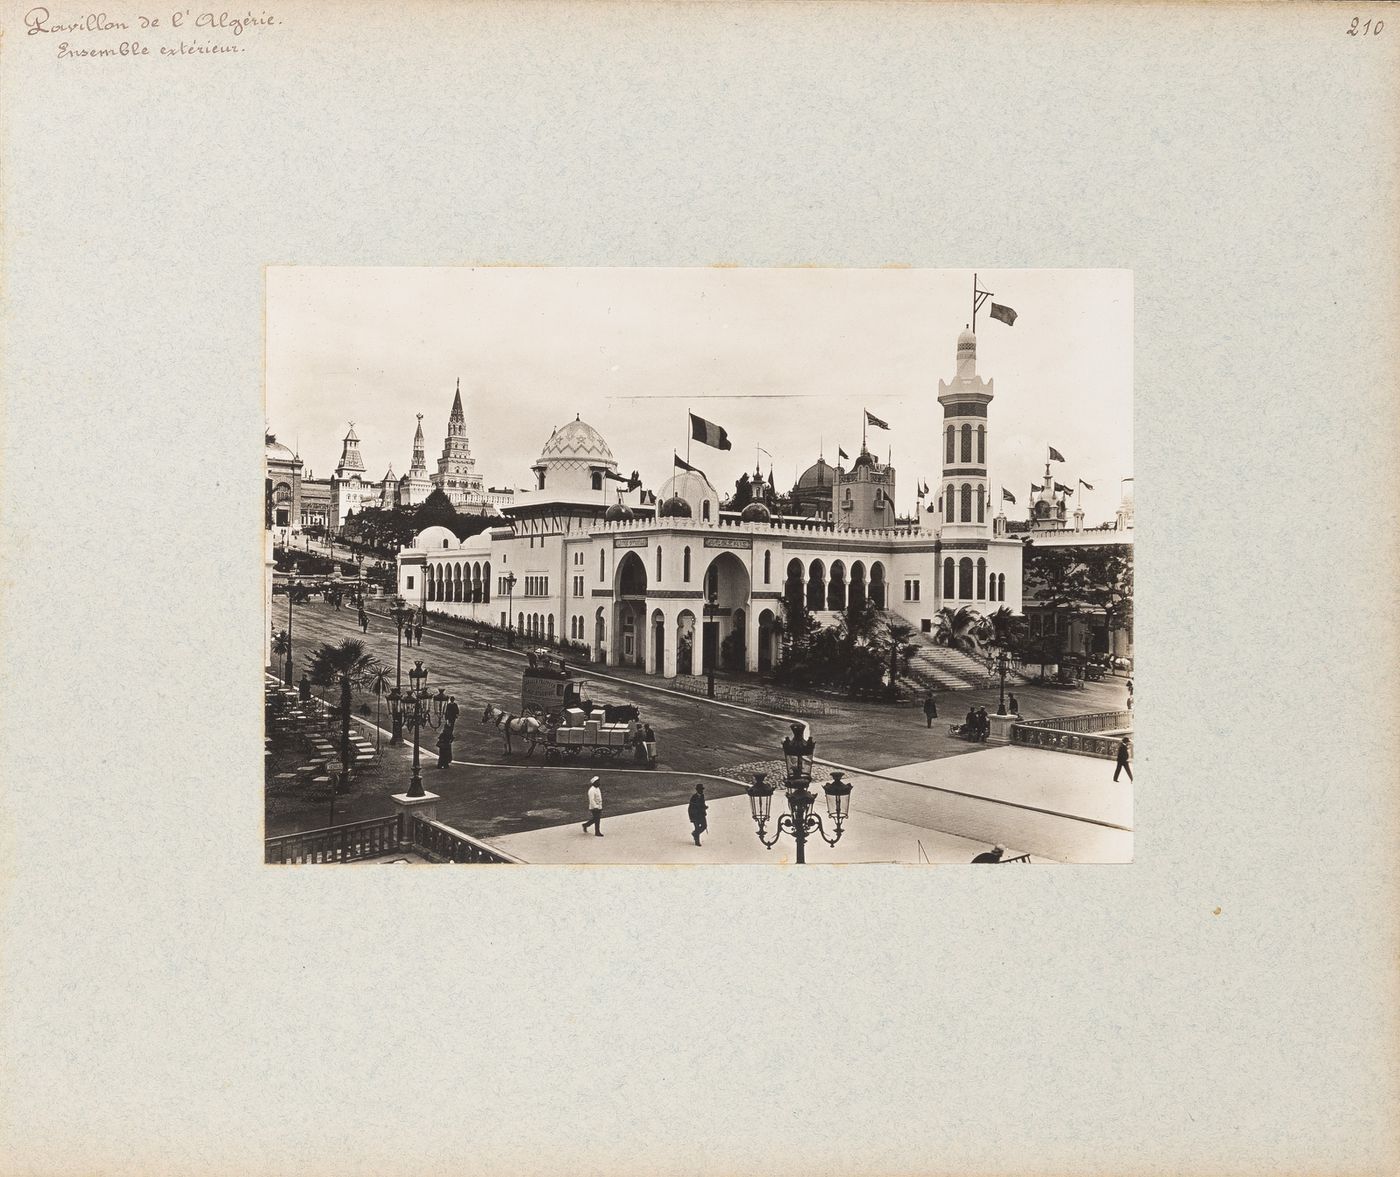 View of Pavillon de l'Algérie, Exposition universelle, 1900, Paris, France